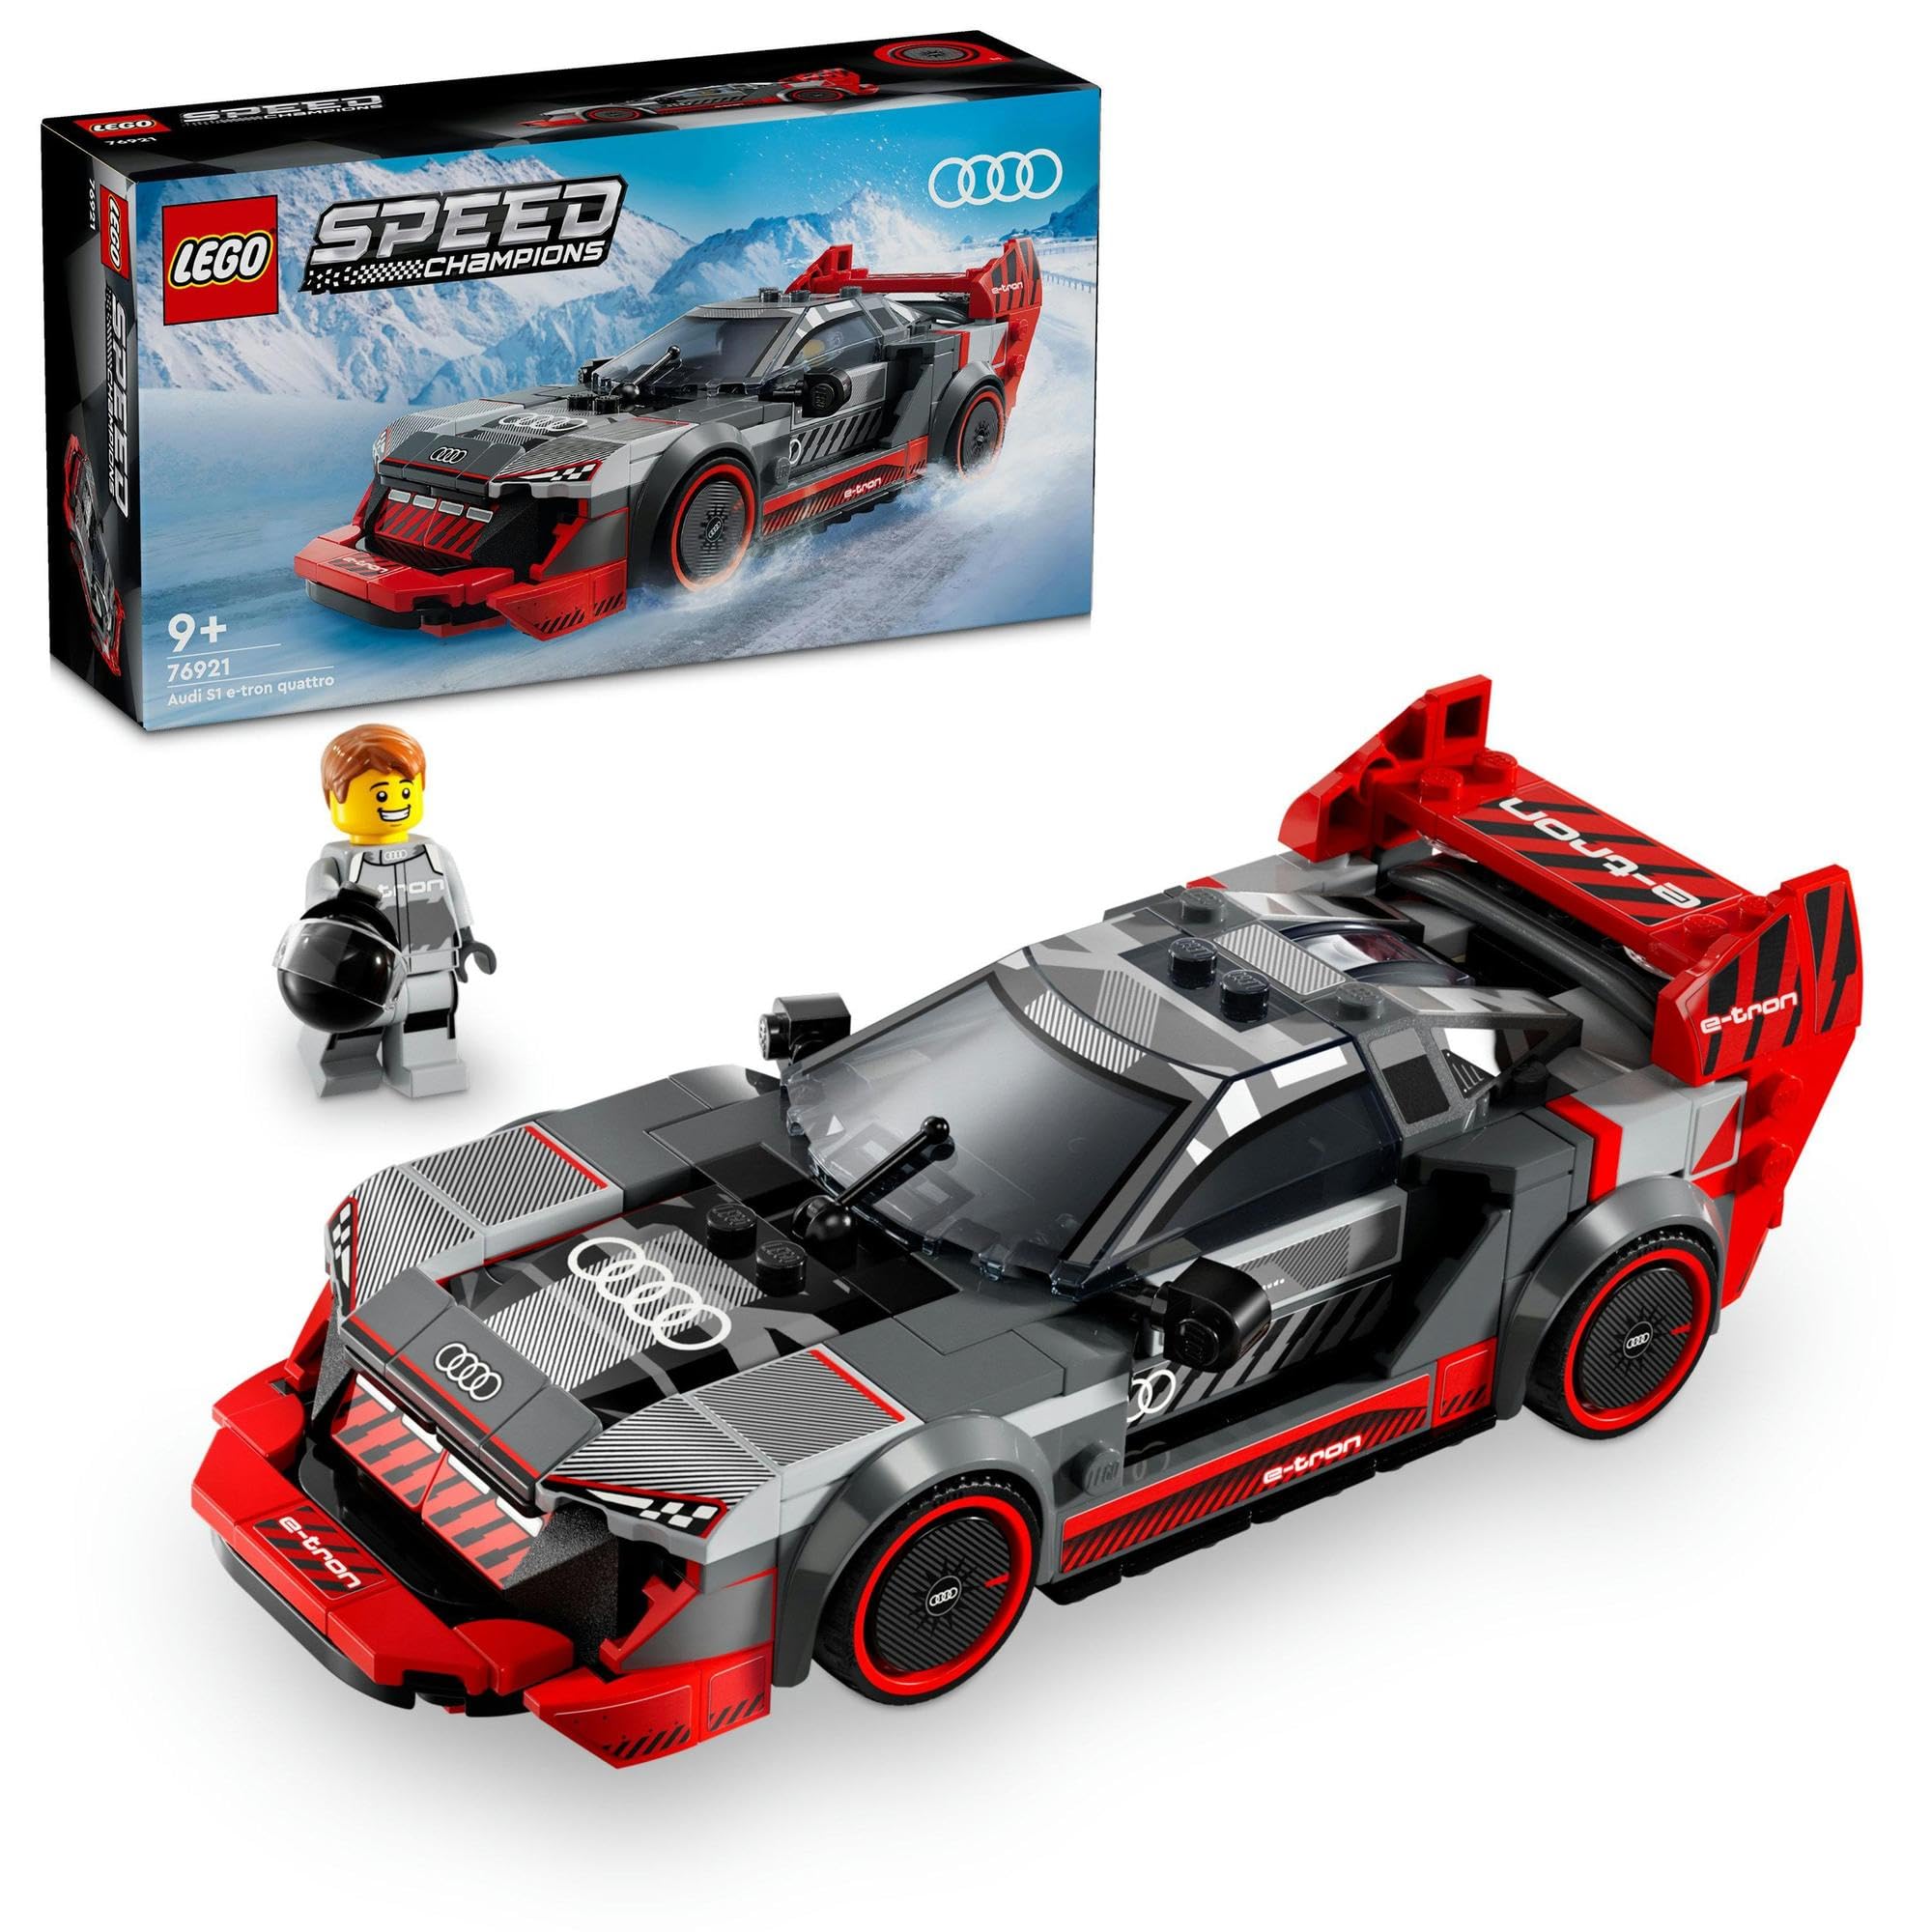 レゴ(LEGO) スピードチャンピオン アウディ S1 e-tron クワトロ レースカー おもちゃ 玩具 プレゼント ブロック 男の子 女の子 子供 8歳 9歳 10歳 11歳 小学生 車 プラモデル 76921画像